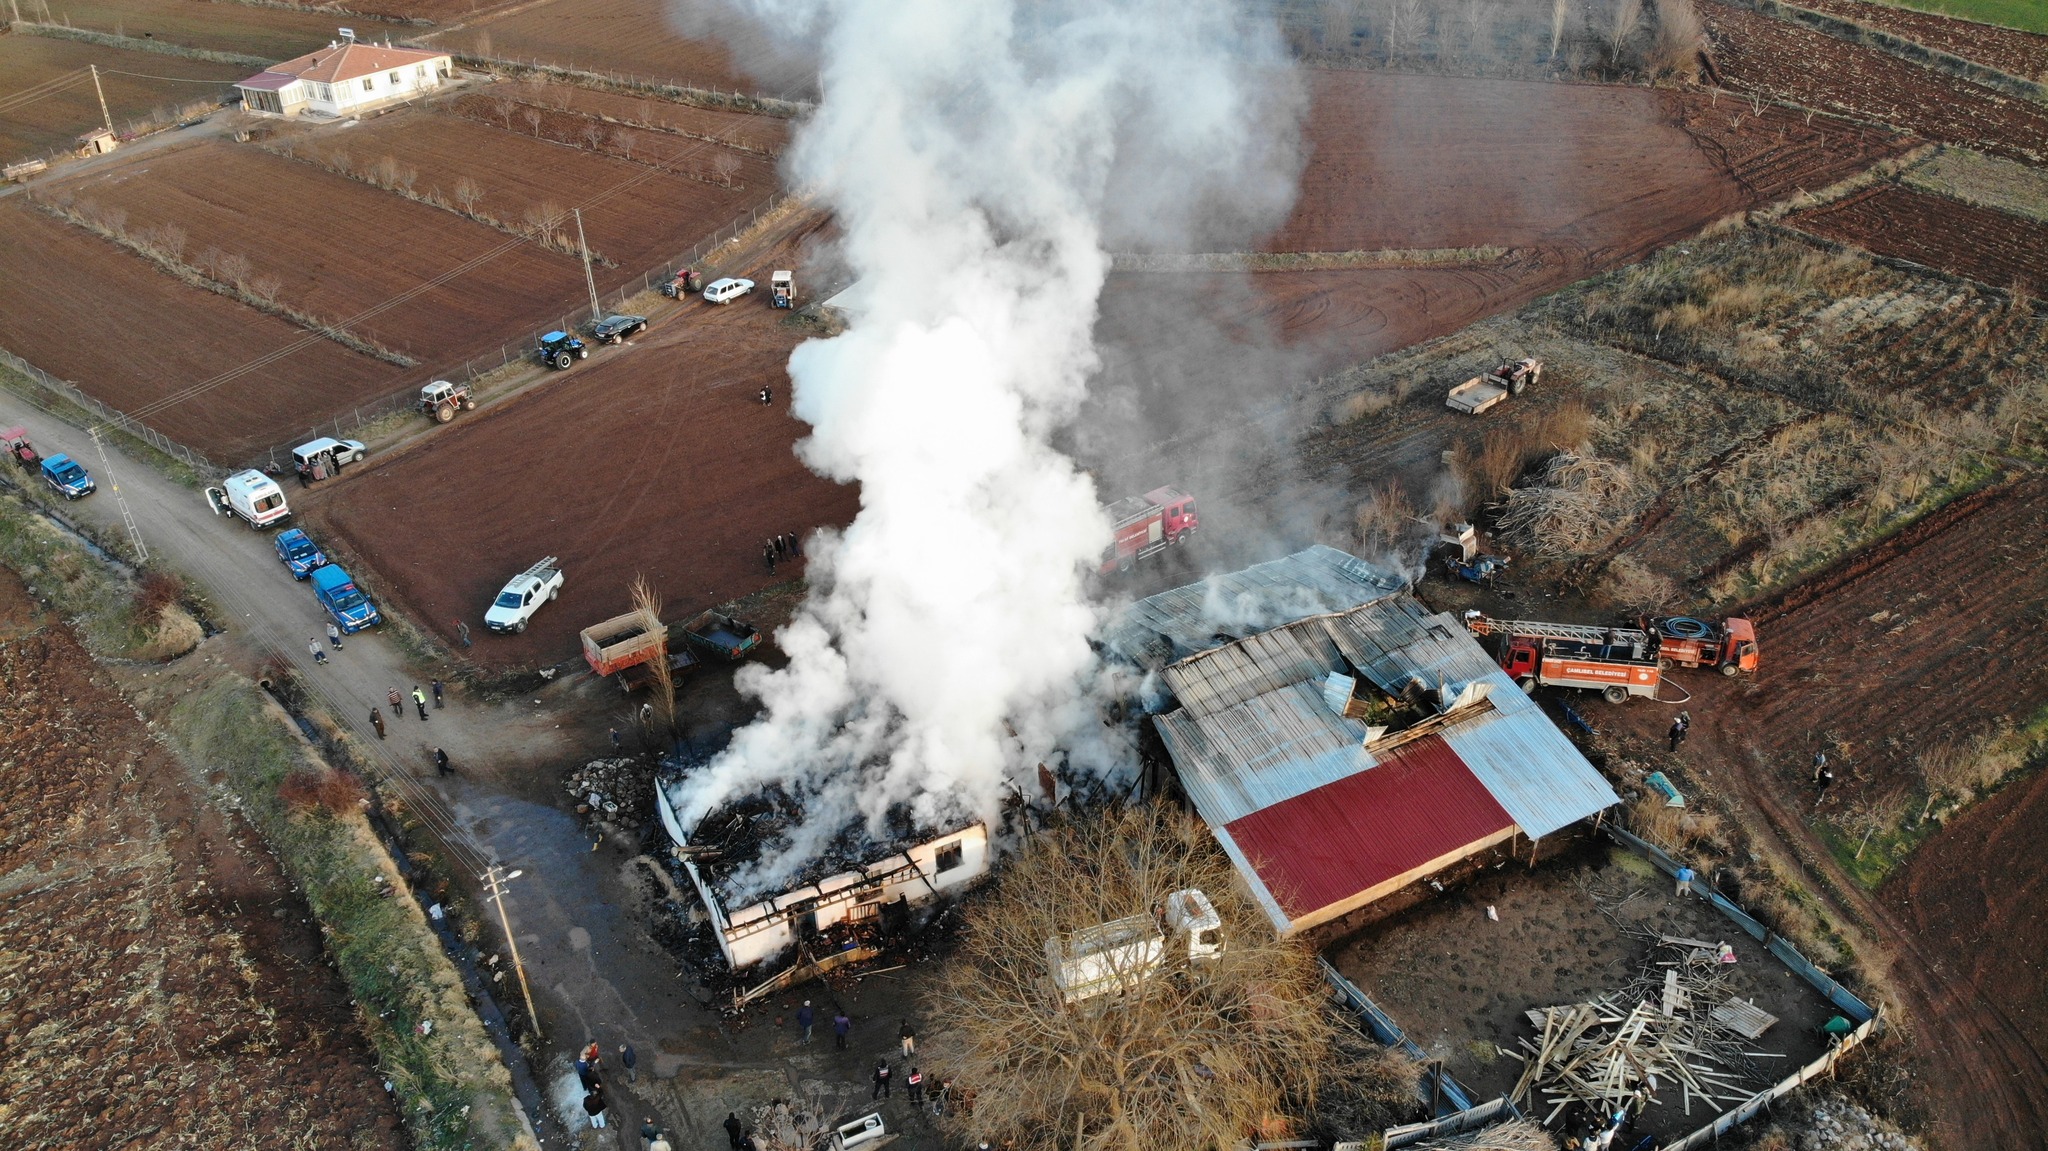 Tokat’ta 7 kişinin yaşadığı evde çıkan yangında ev, traktör ve samanlık yanarak kullanılamaz hale geldi